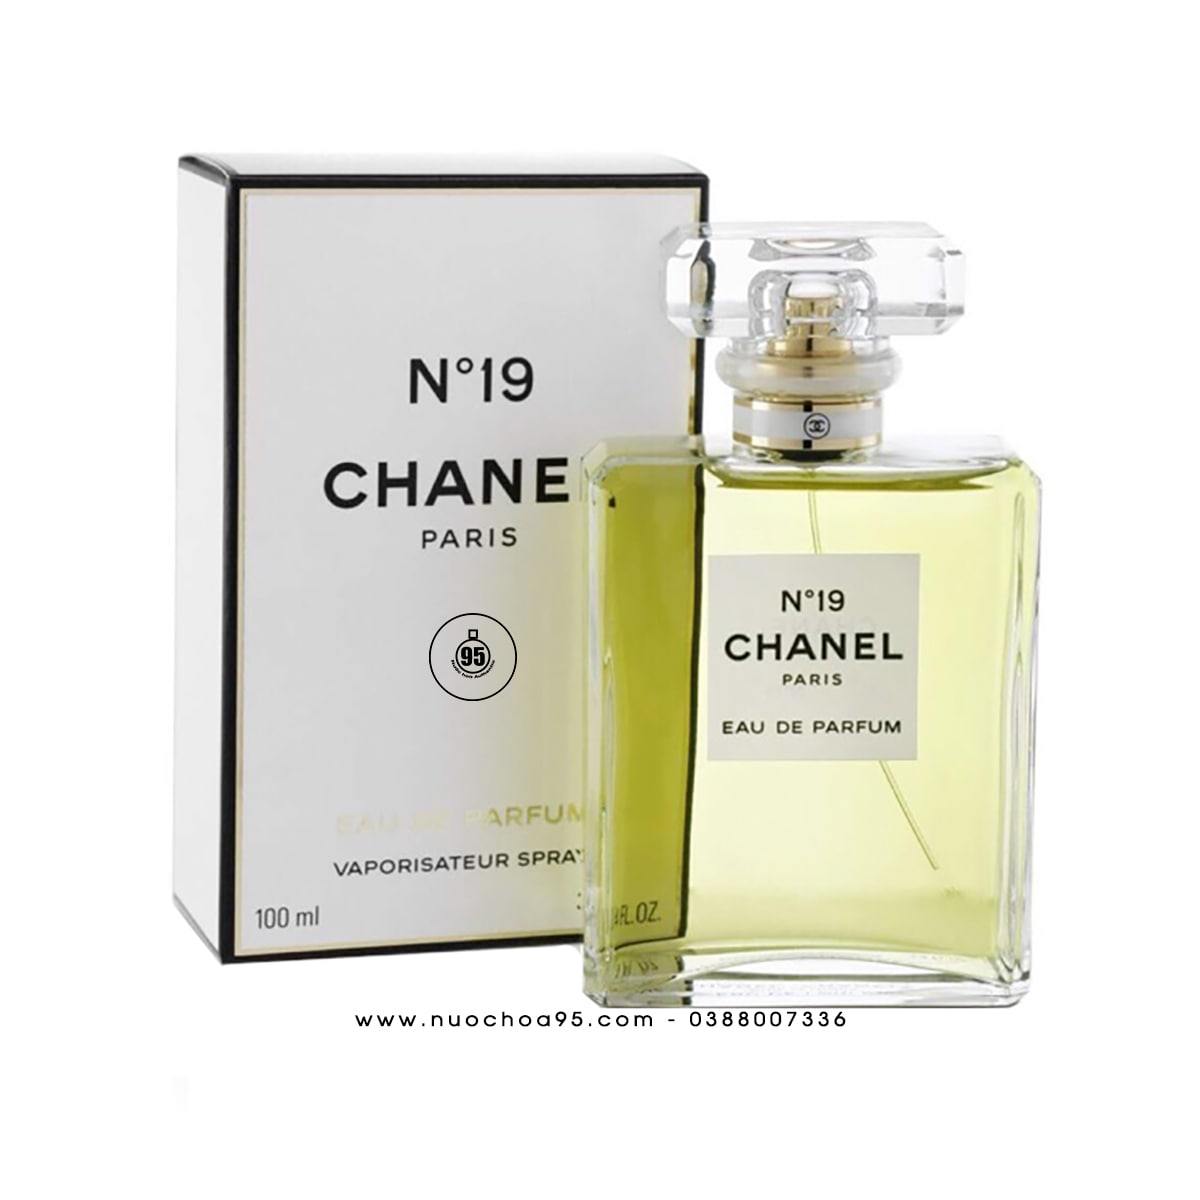 Nước hoa Chanel Bleu 100ml EDT - Mỹ Phẩm Hàng Hiệu Pháp - 